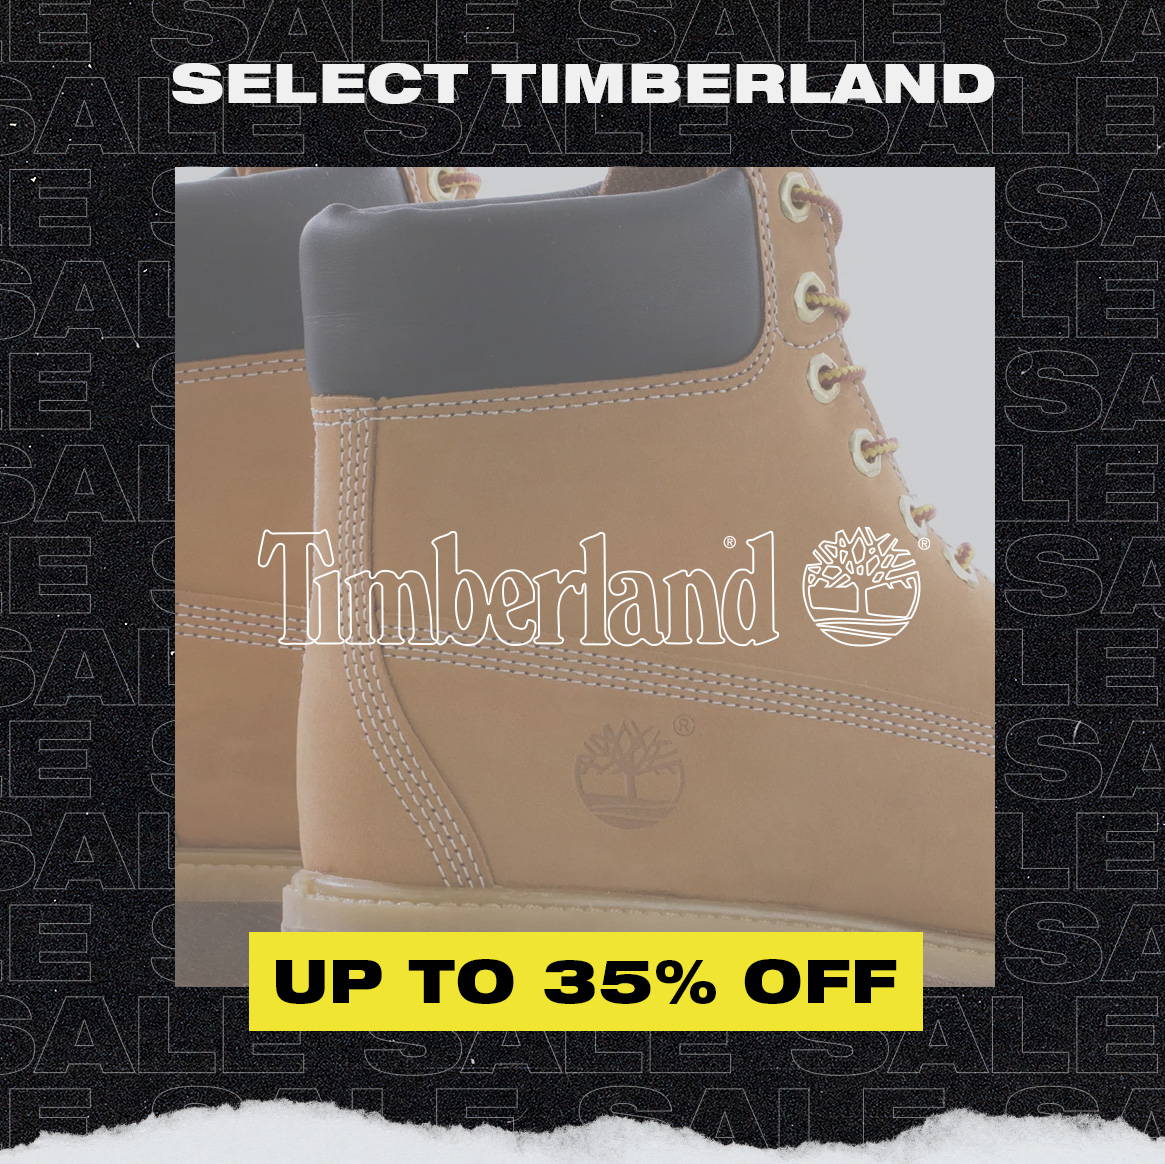 timberland sale